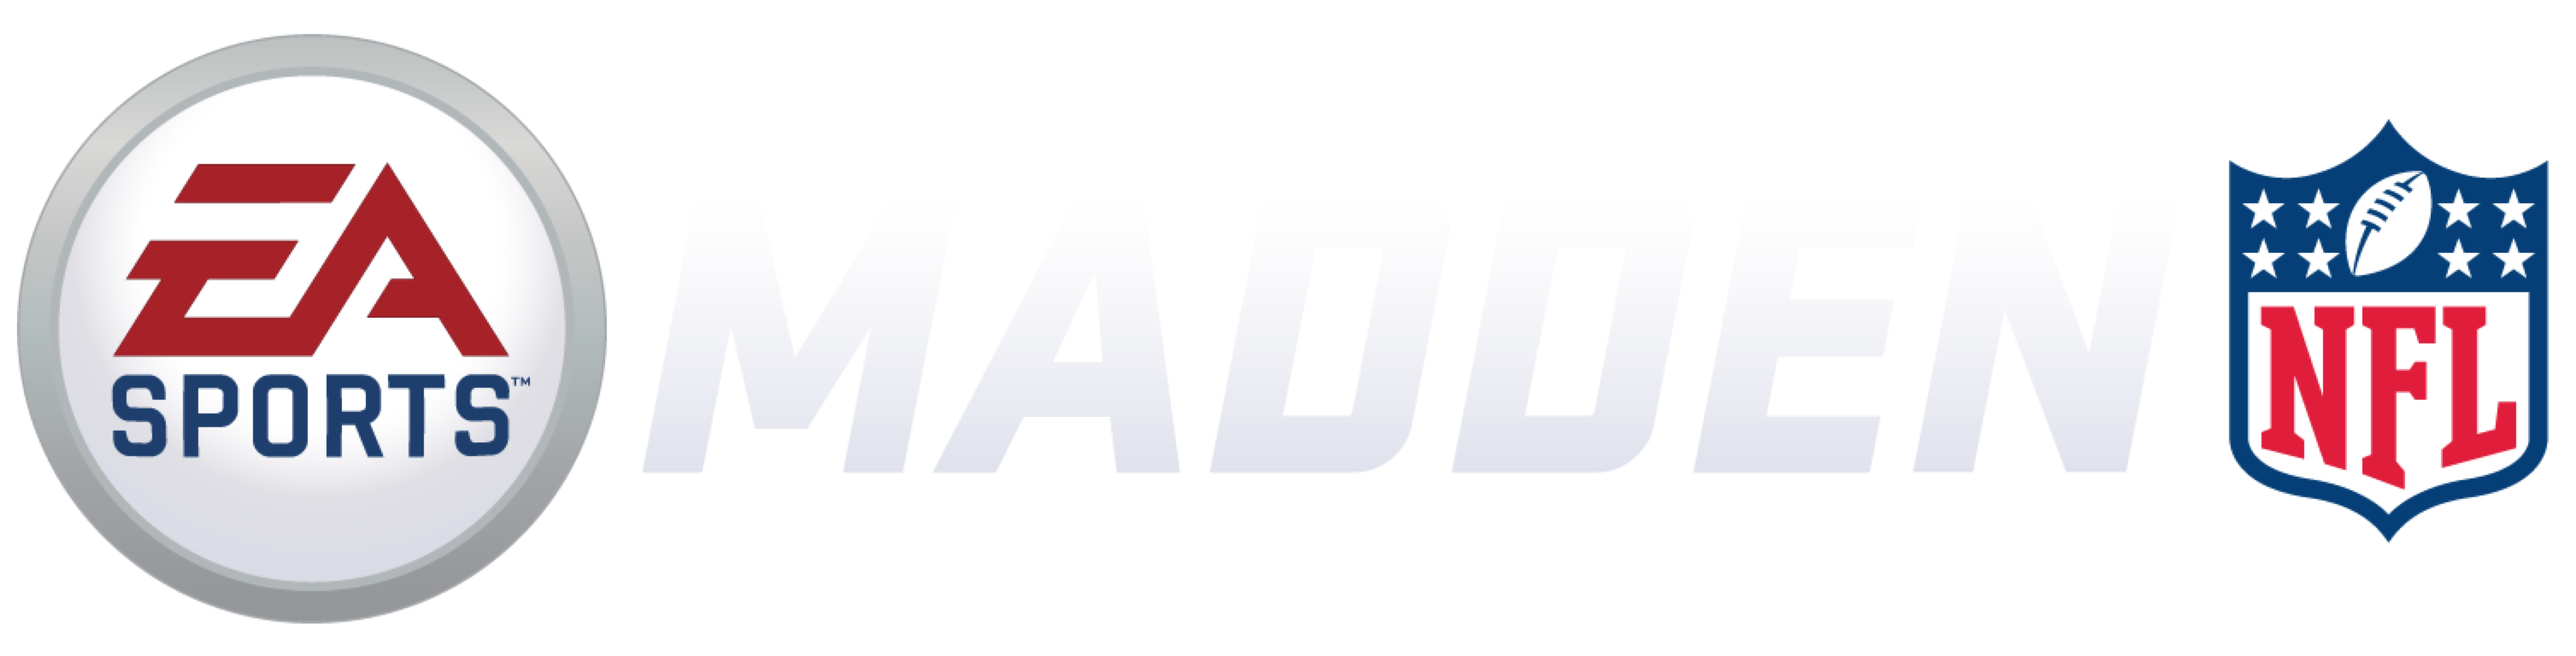 Madden Nfl 19 Logo - fasrengine